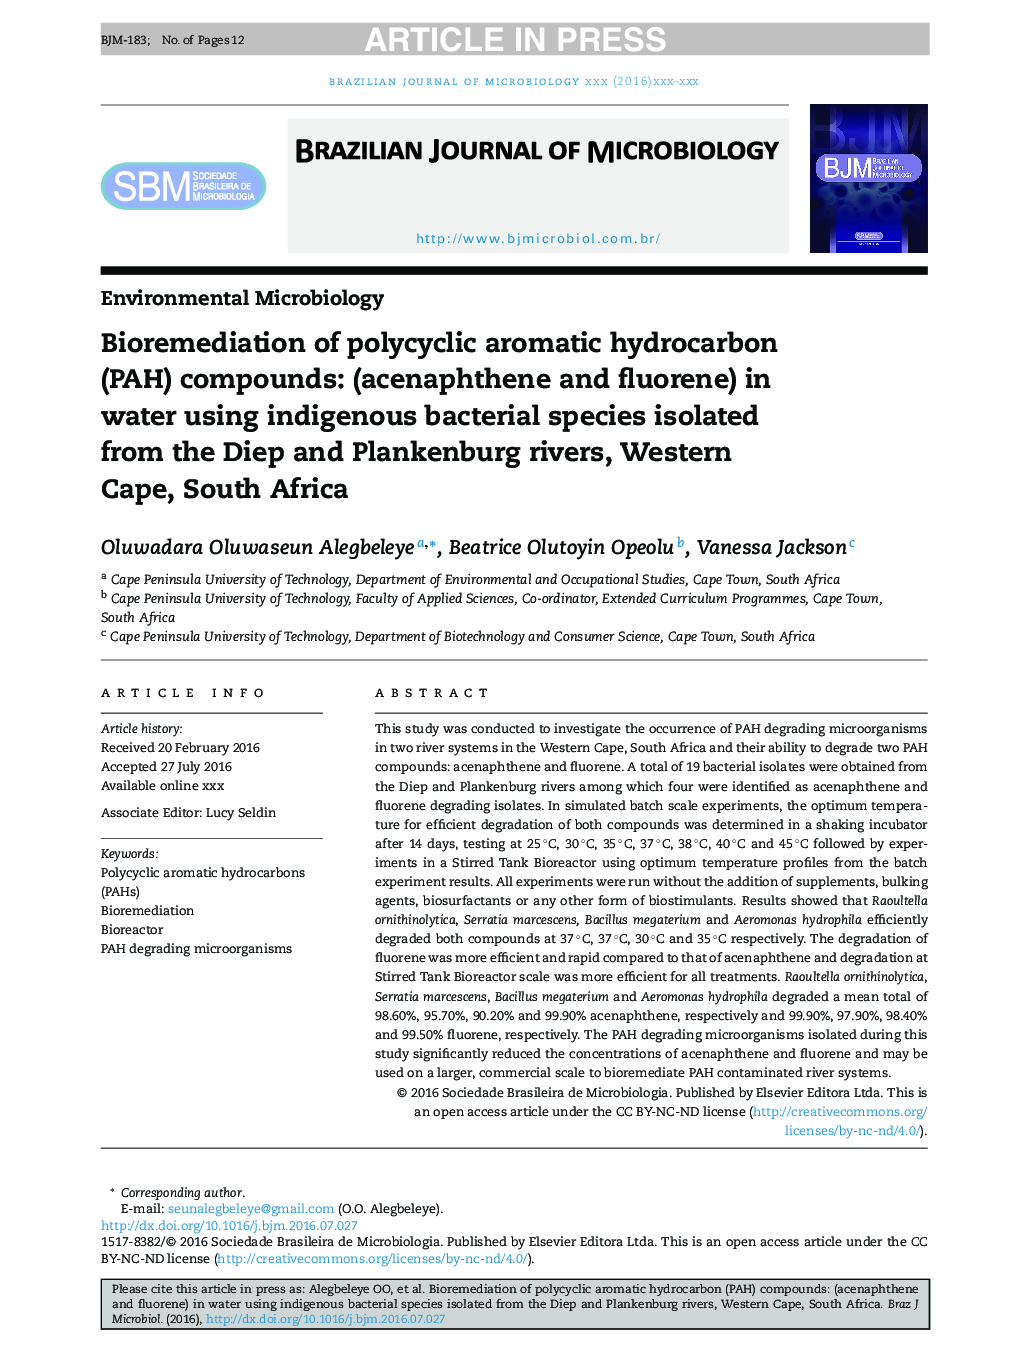 بیولوژیک سازی ترکیبات هیدروکربنی معطر چند حلقه ای: (آکنهفن و فلورن) در آب با استفاده از گونه های باکتری بومی جدا شده از رودخانه های دایپ و پلانکنبرگ، کیپ غربی، آفریقای جنوبی 